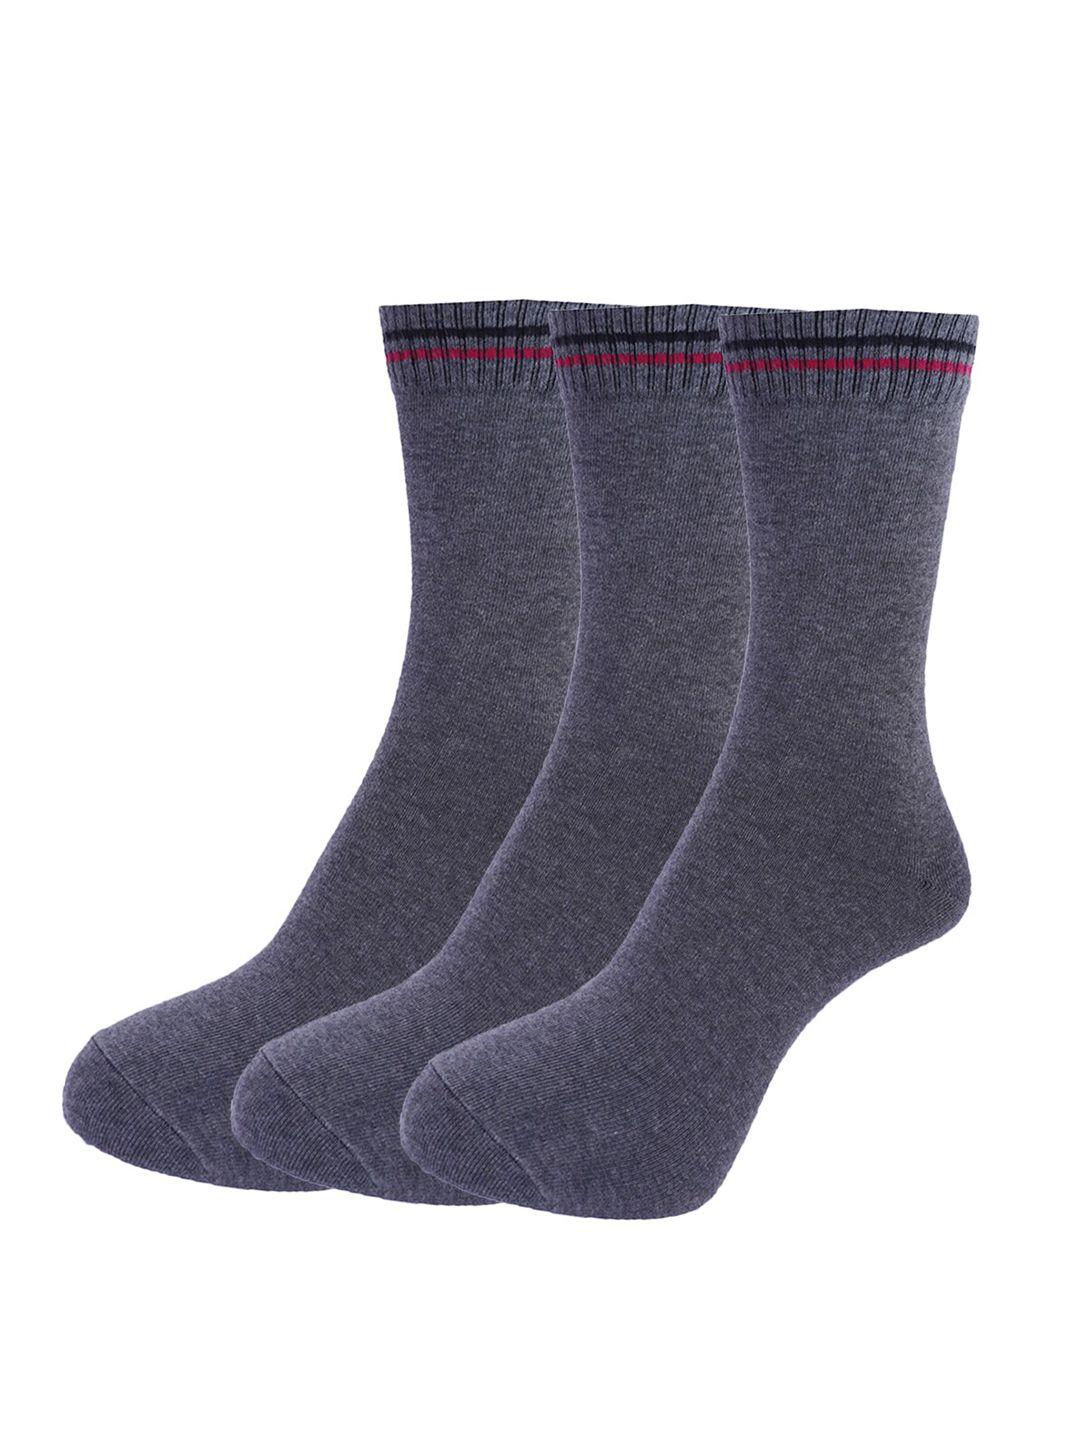 dollar socks men pack of 3 assorted cotton full-length socks